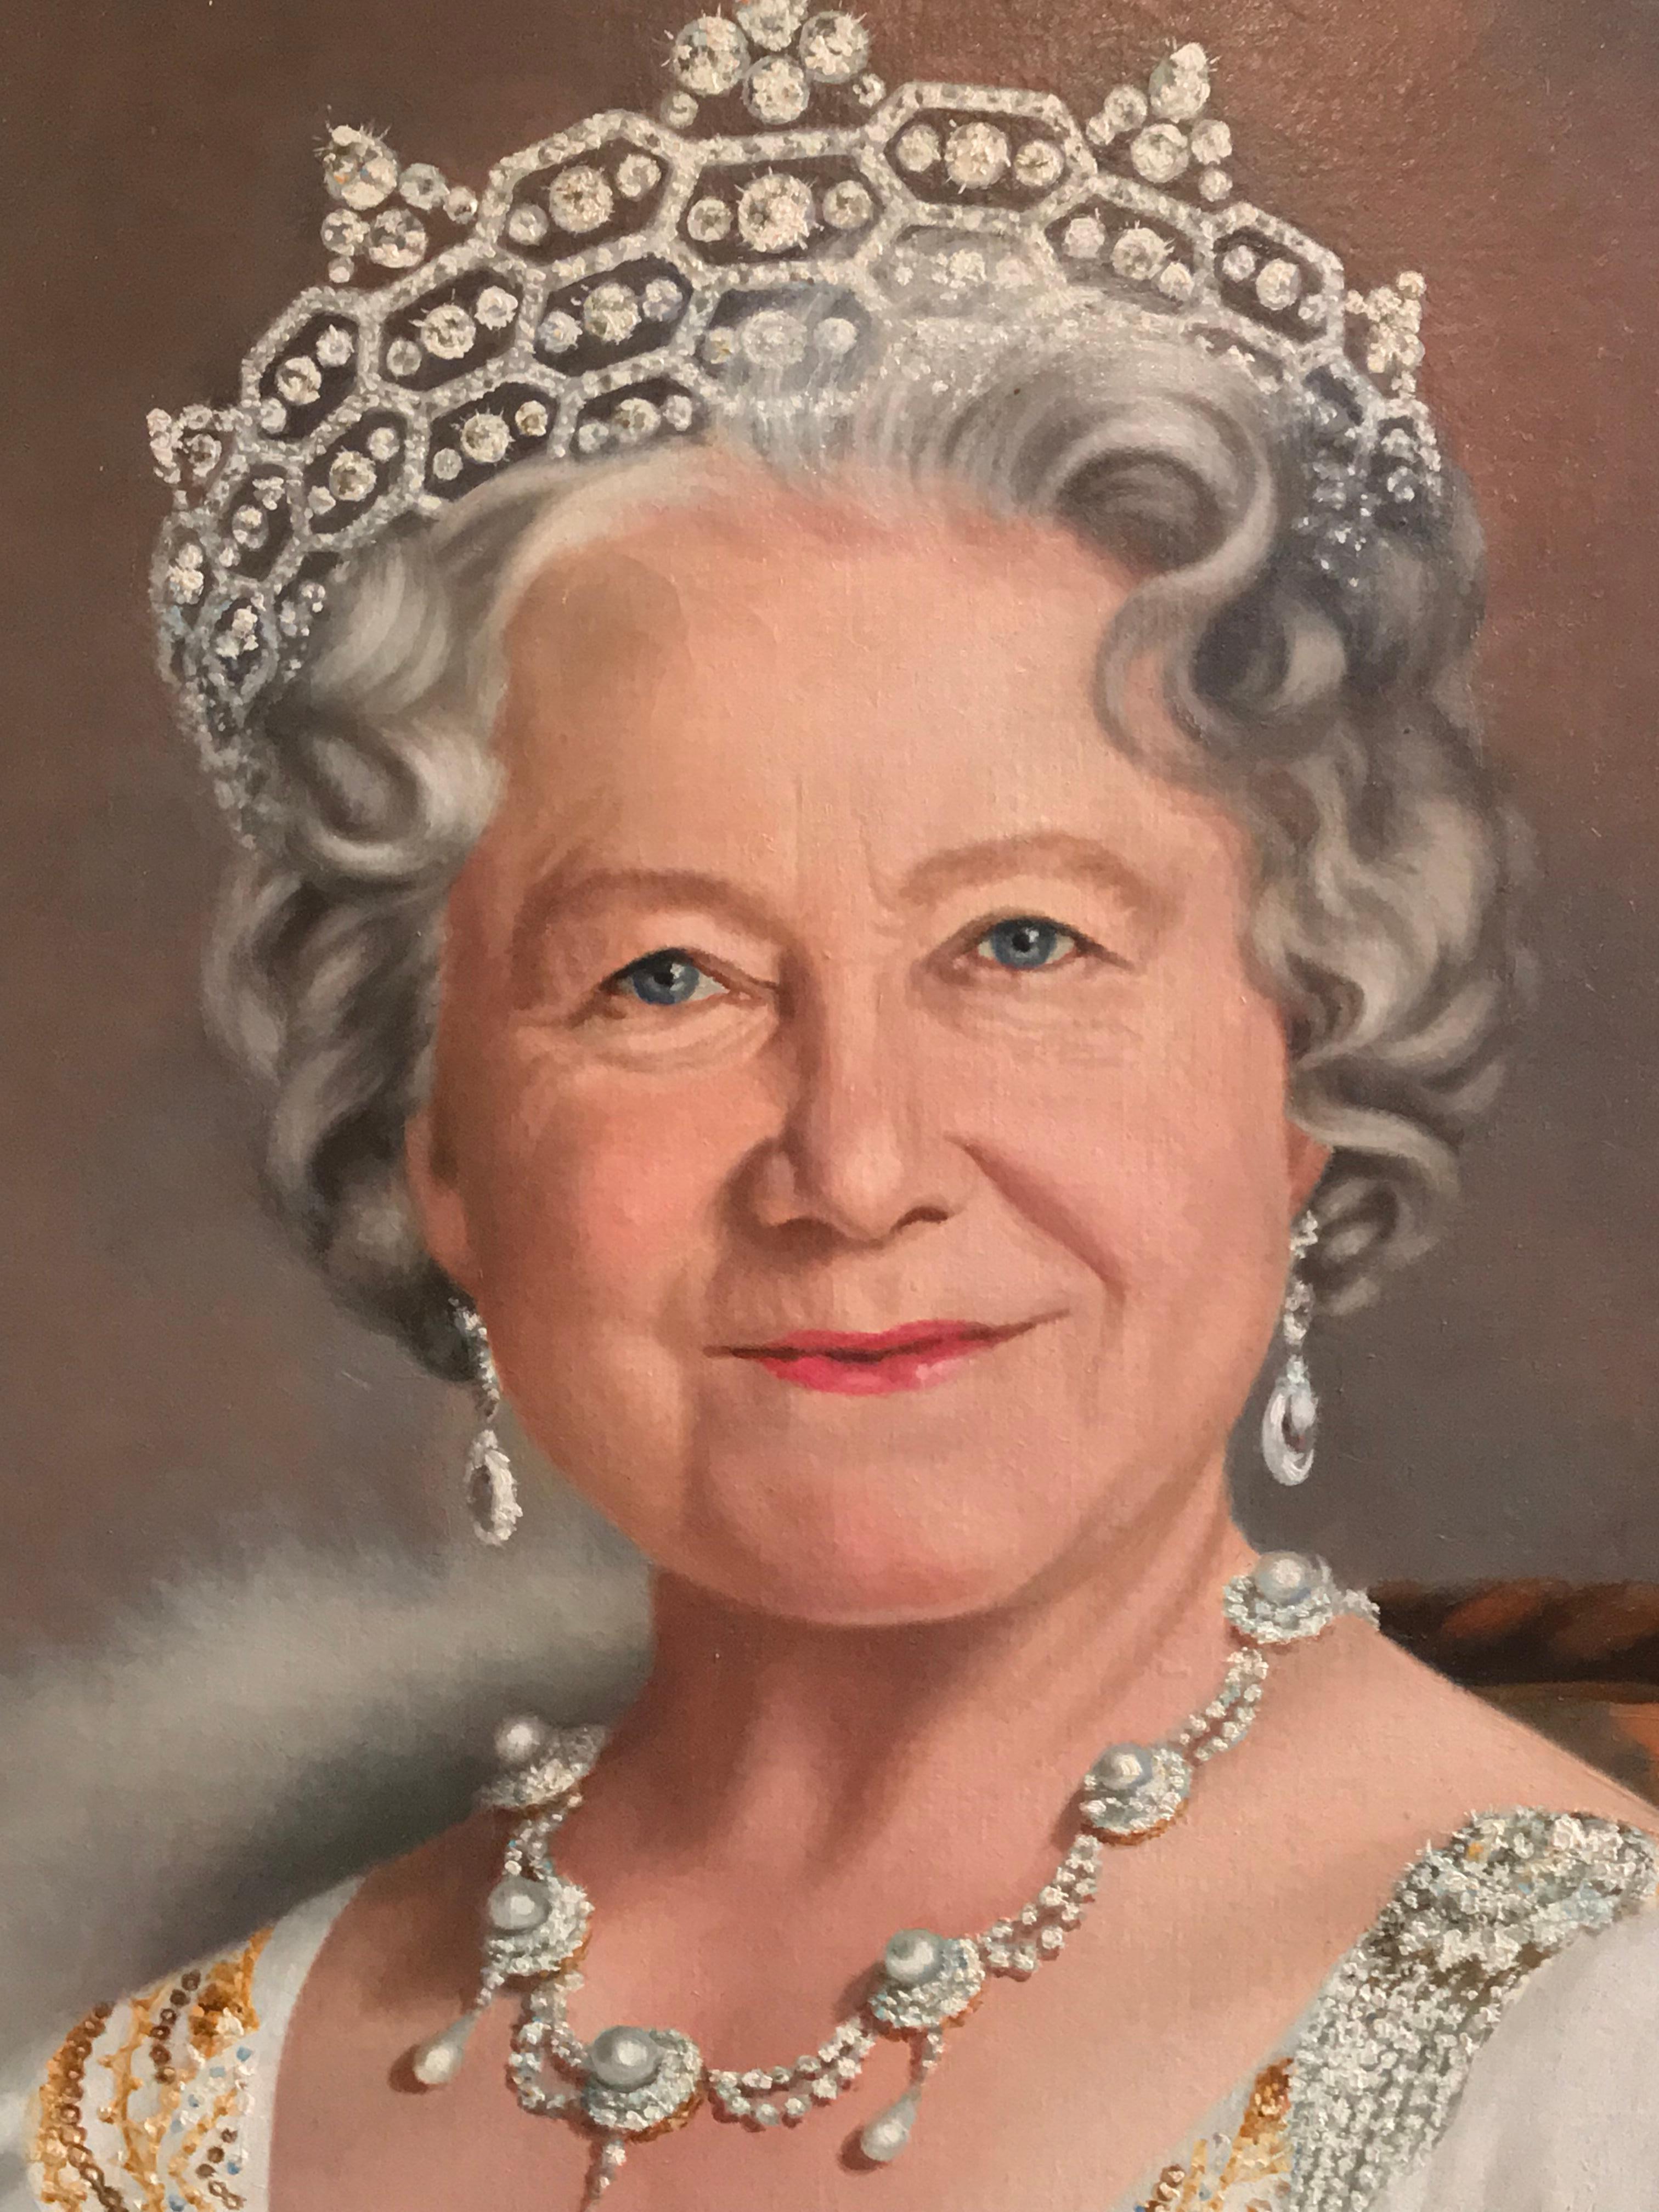 queen elizabeth oil painting